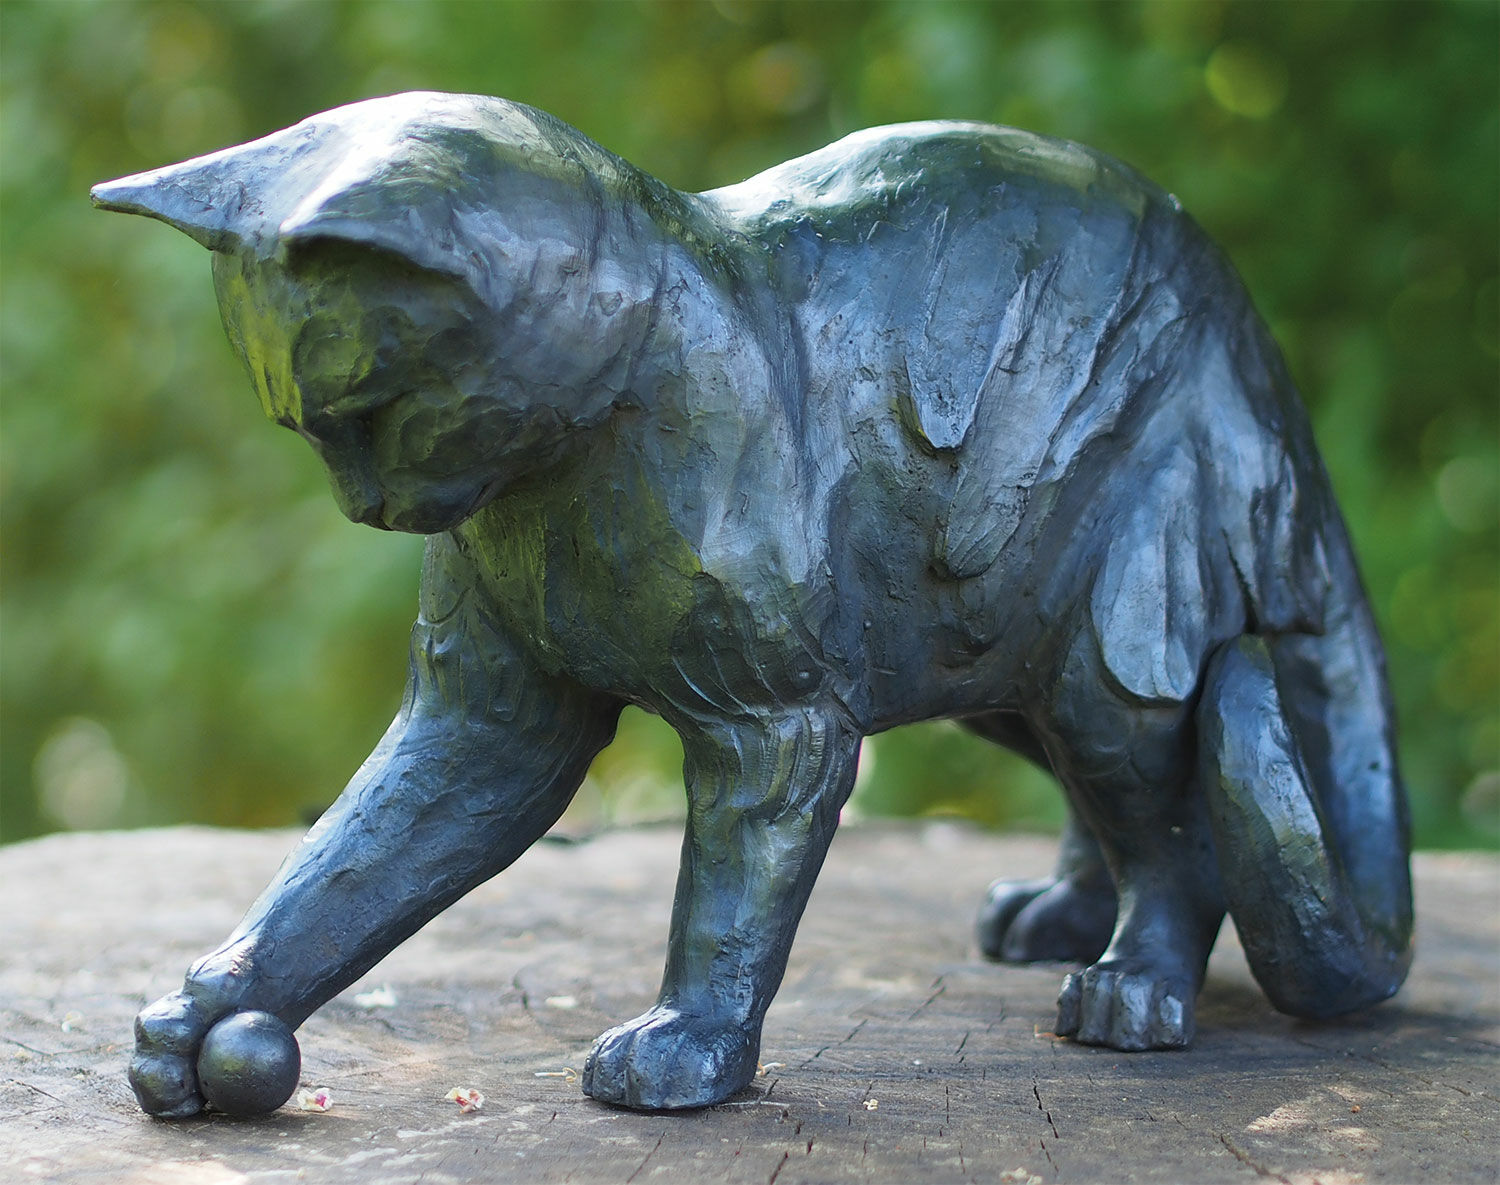 Garden sculpture "Playful Cat with Ball", bronze